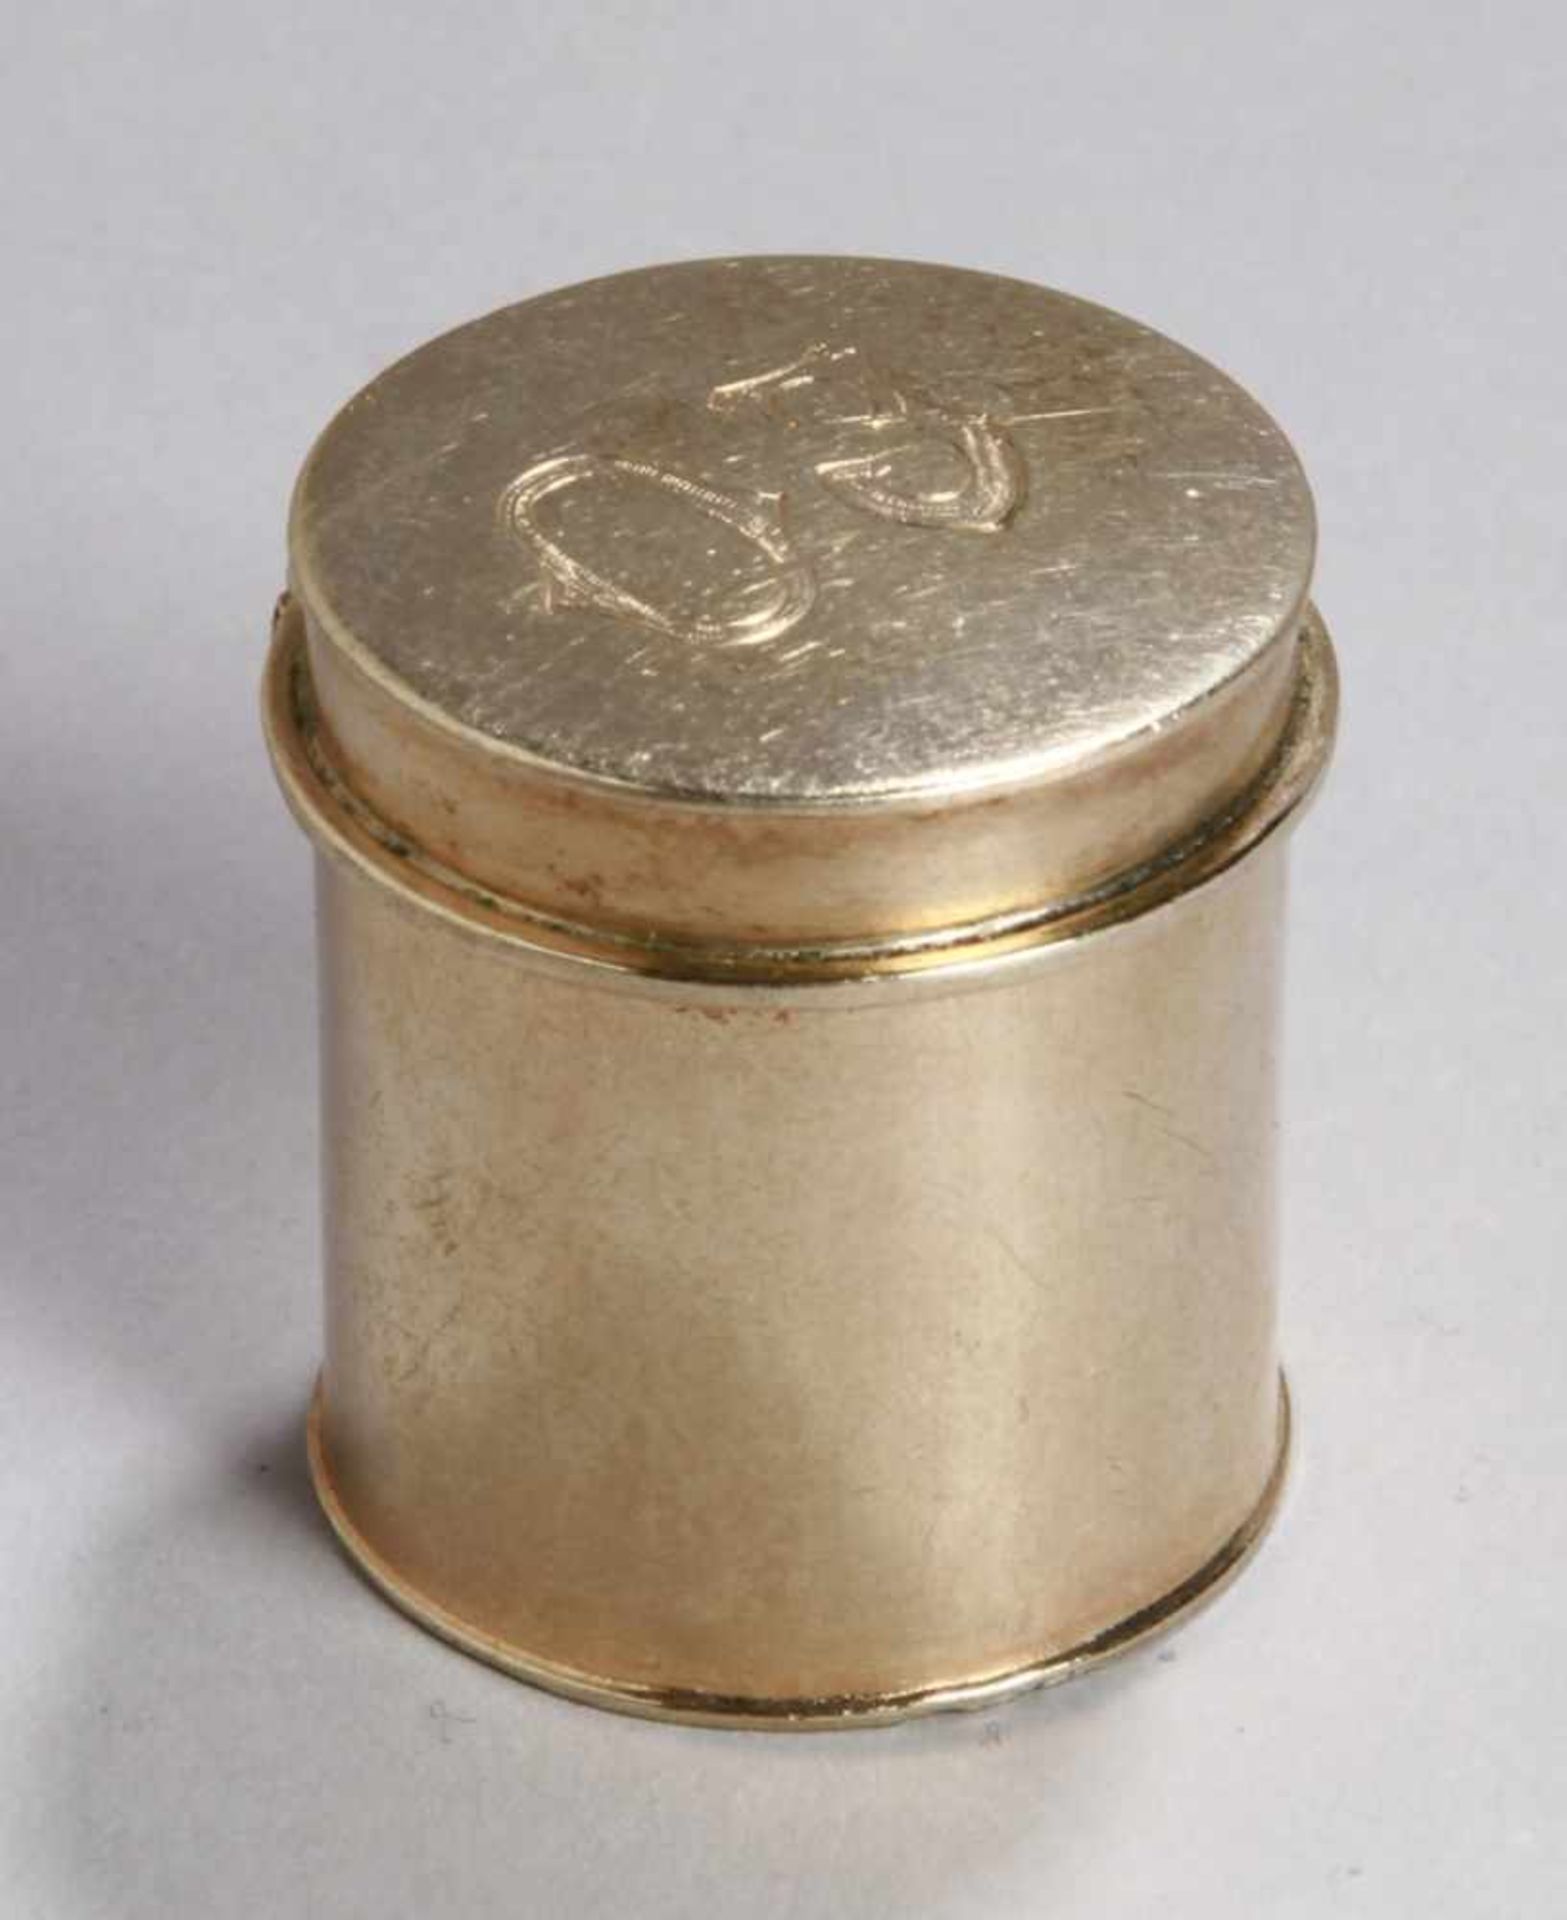 Salbungsgefäß, um 1920, Silber 835, vergoldet, runde, zylindrische Form mit scharniertemDeckel,